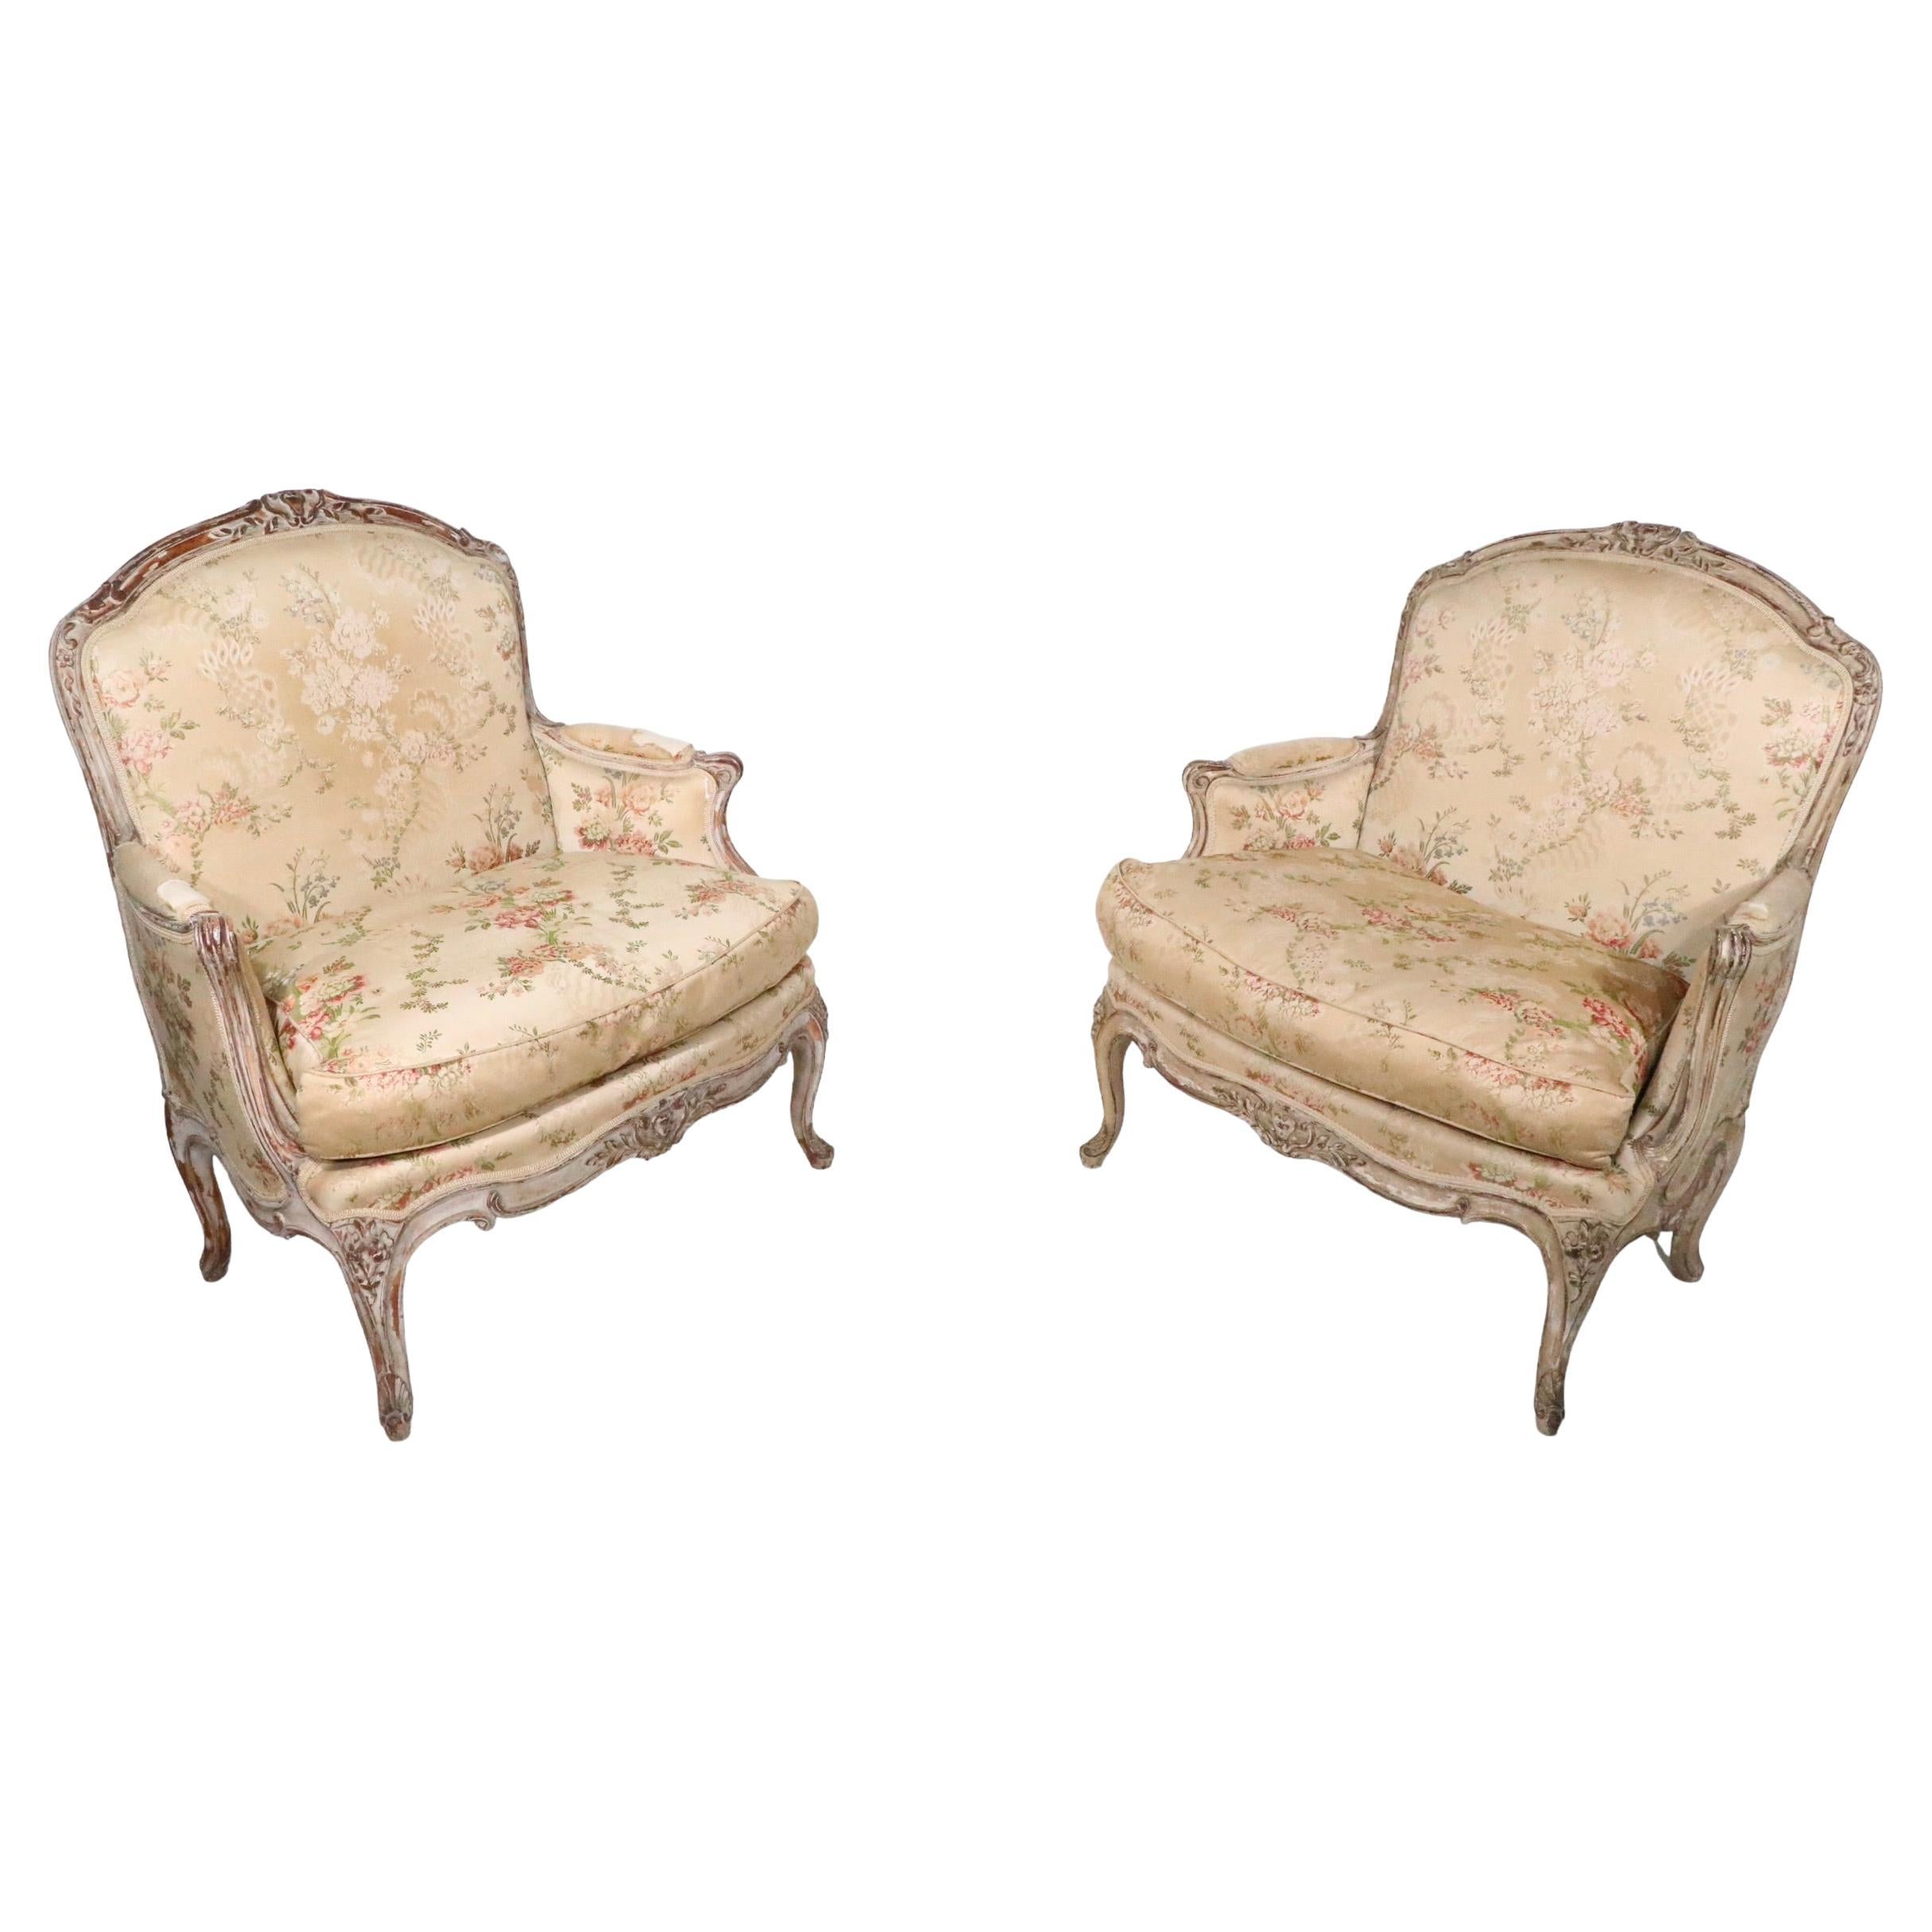 Voguish pair of French Beregeres, with handved wood frames, and upholstered seats and backs. Les chaises sont structurellement saines et robustes, la tapisserie est en l'état et devra être remplacée. Nous pensons qu'il s'agit de meubles Louis XV,